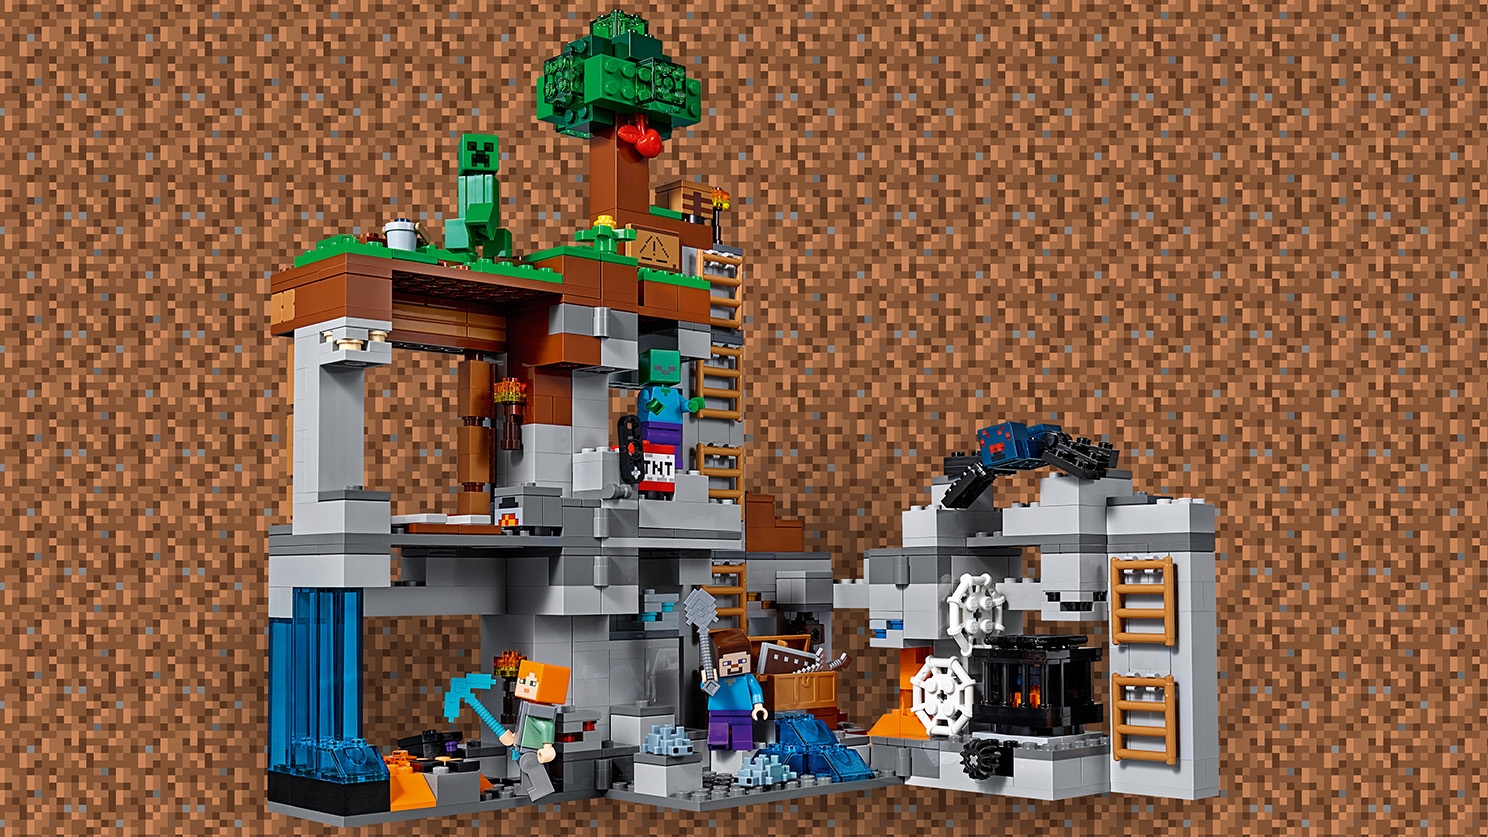 ベッドロックの冒険 21147 - レゴ®マインクラフト セット - LEGO.comキッズ